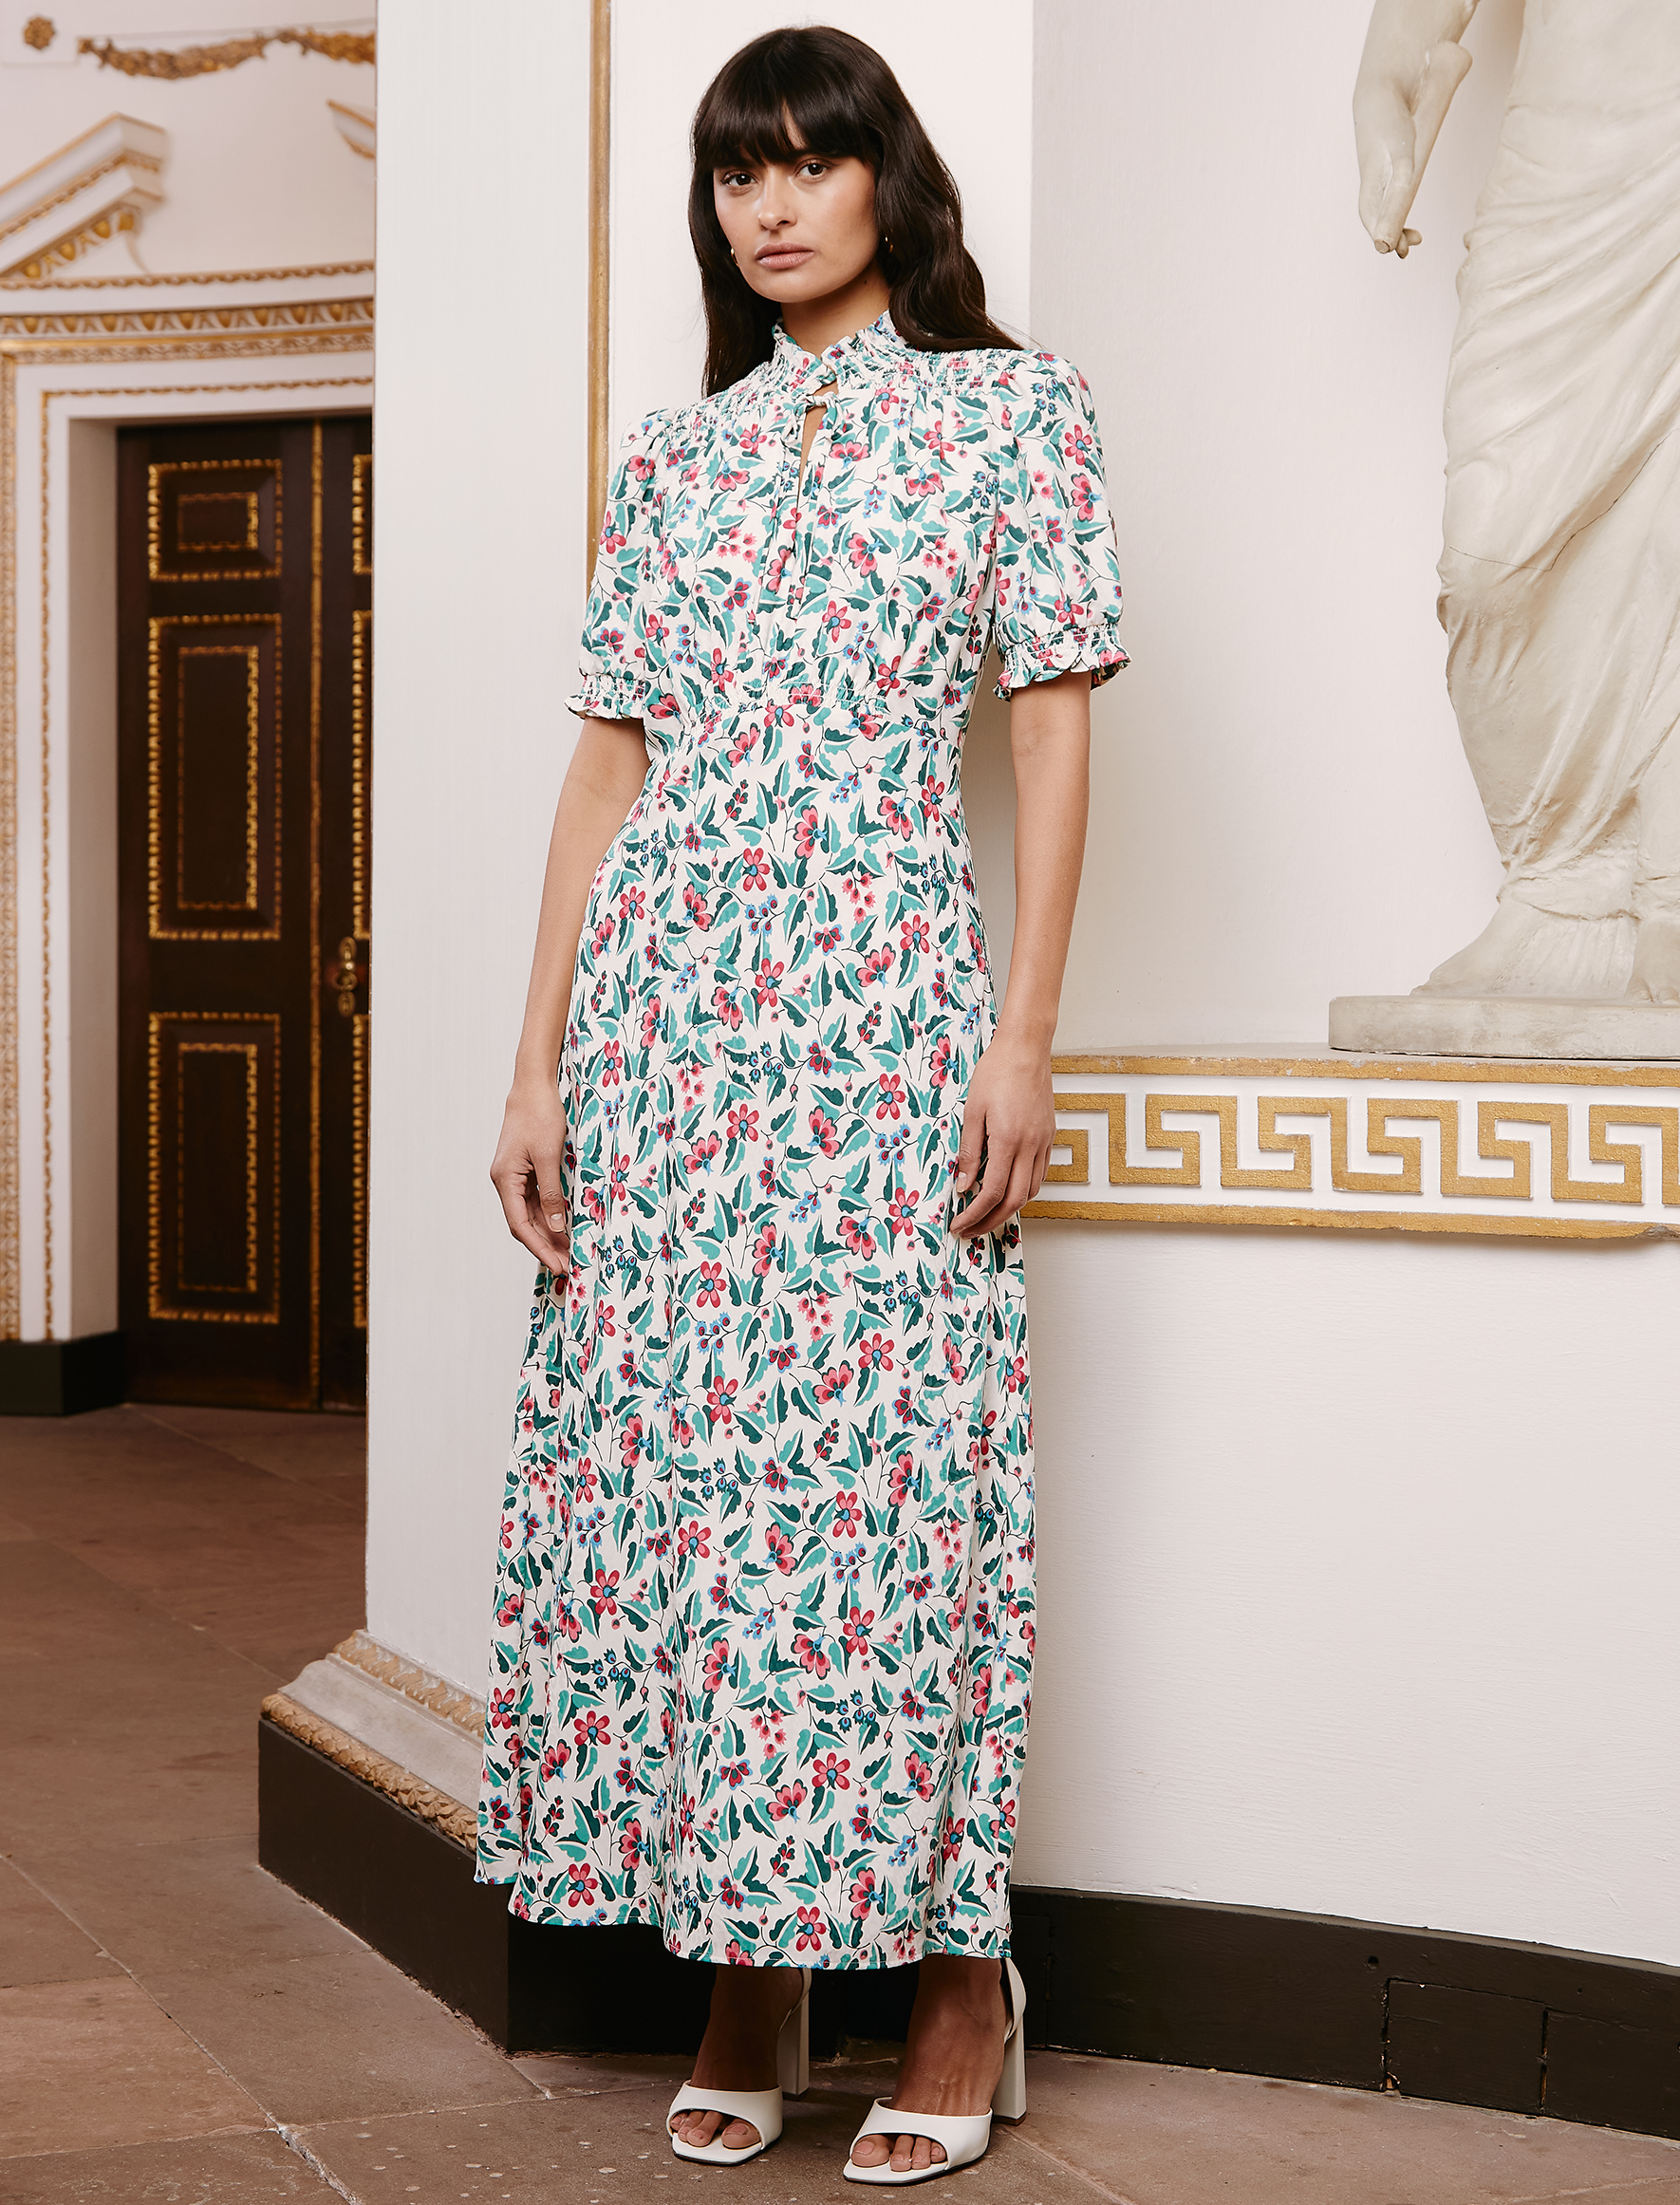 Cefinn Irina Bias Cut Maxi Dress - White Multi Tropical Floral Print